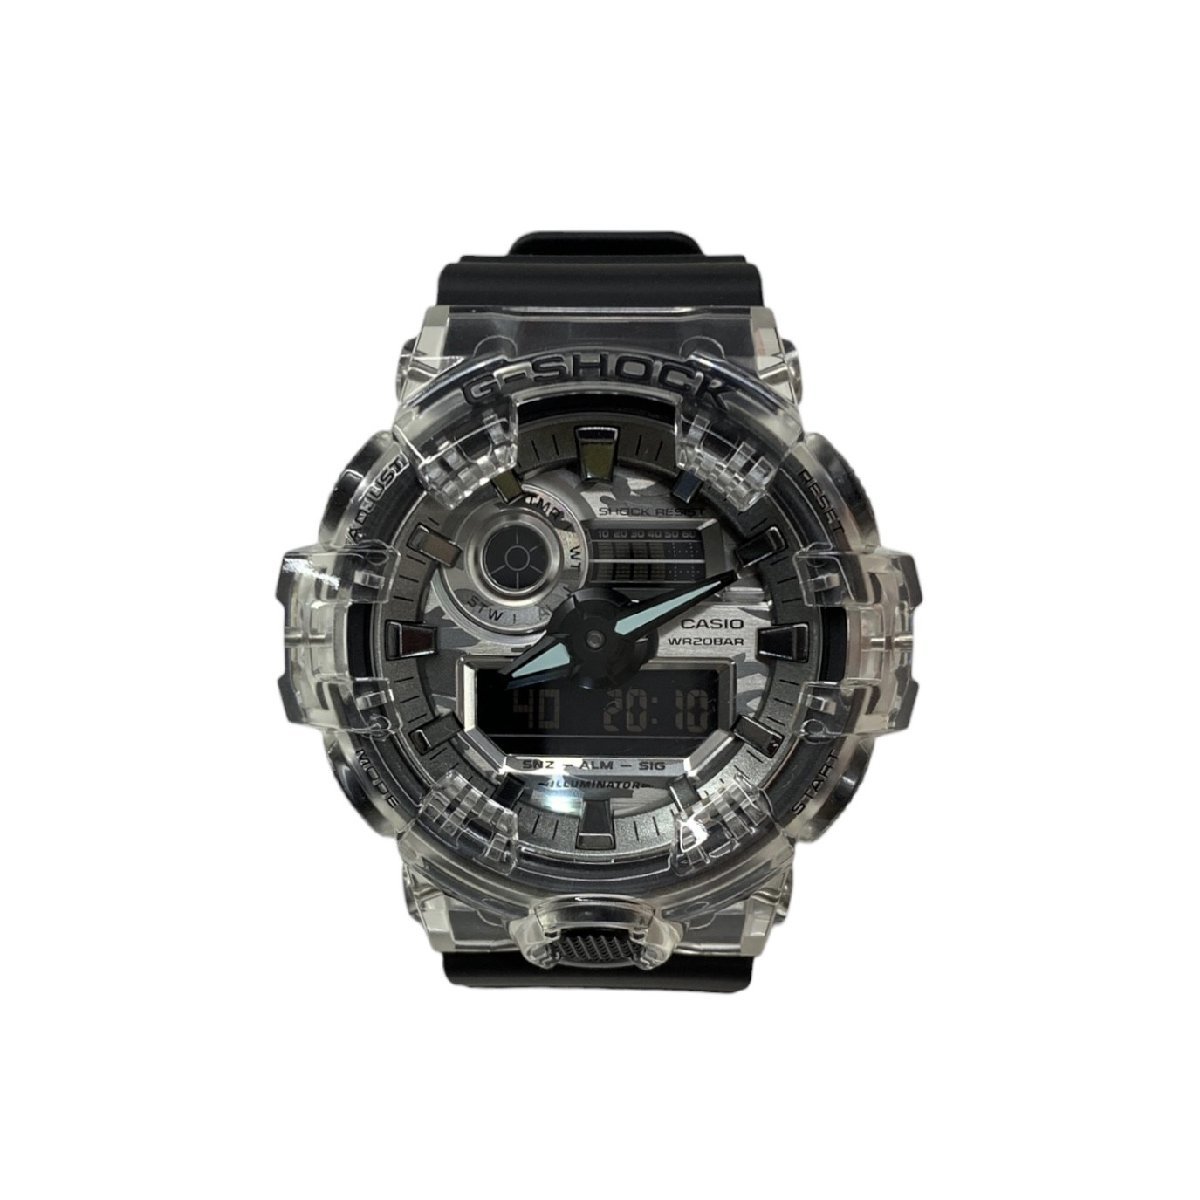 CASIO (カシオ) G-SHOCK Gショック カモフラージュスケルトン デジアナ腕時計 クォーツ GA-700SKC ブラック クリア メンズ/025